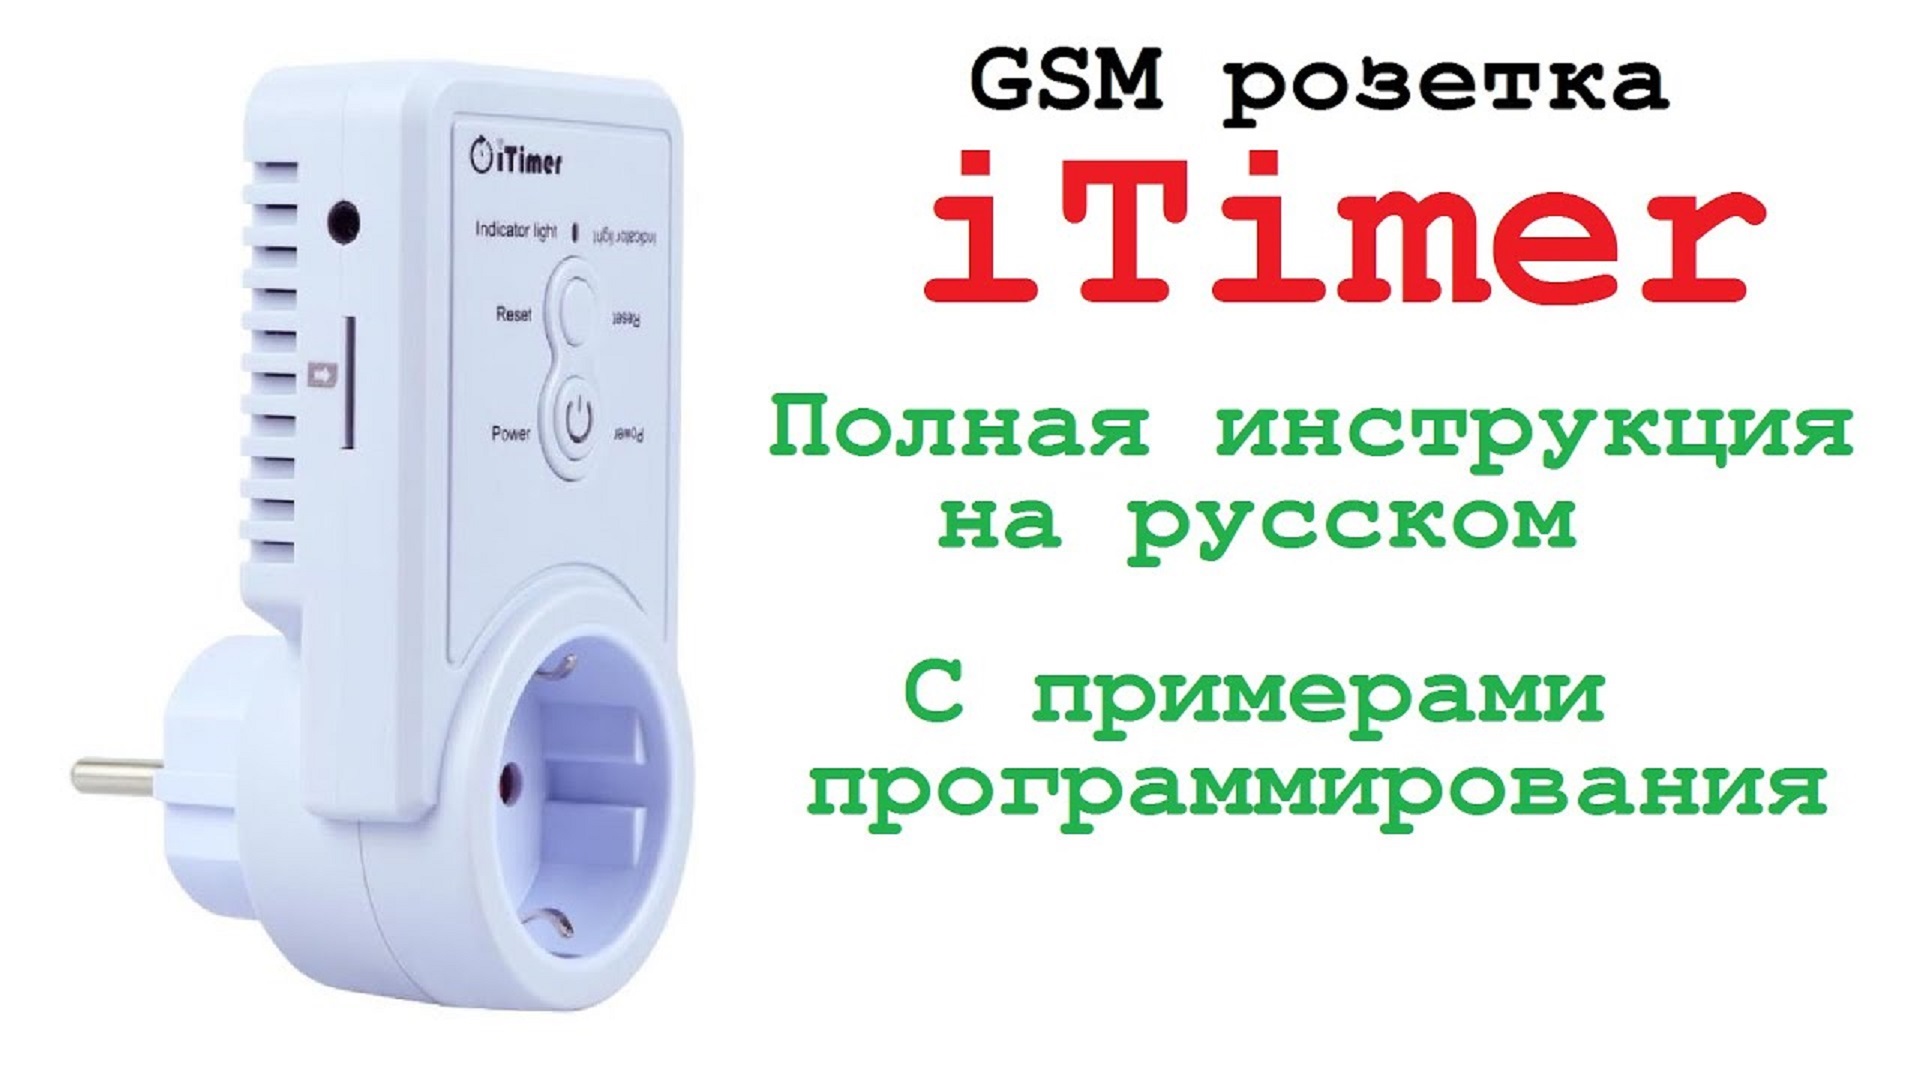 GSM розетка с датчиком температуры iTimer. Умный дом.Smart House. GSM socket with temperature sensor